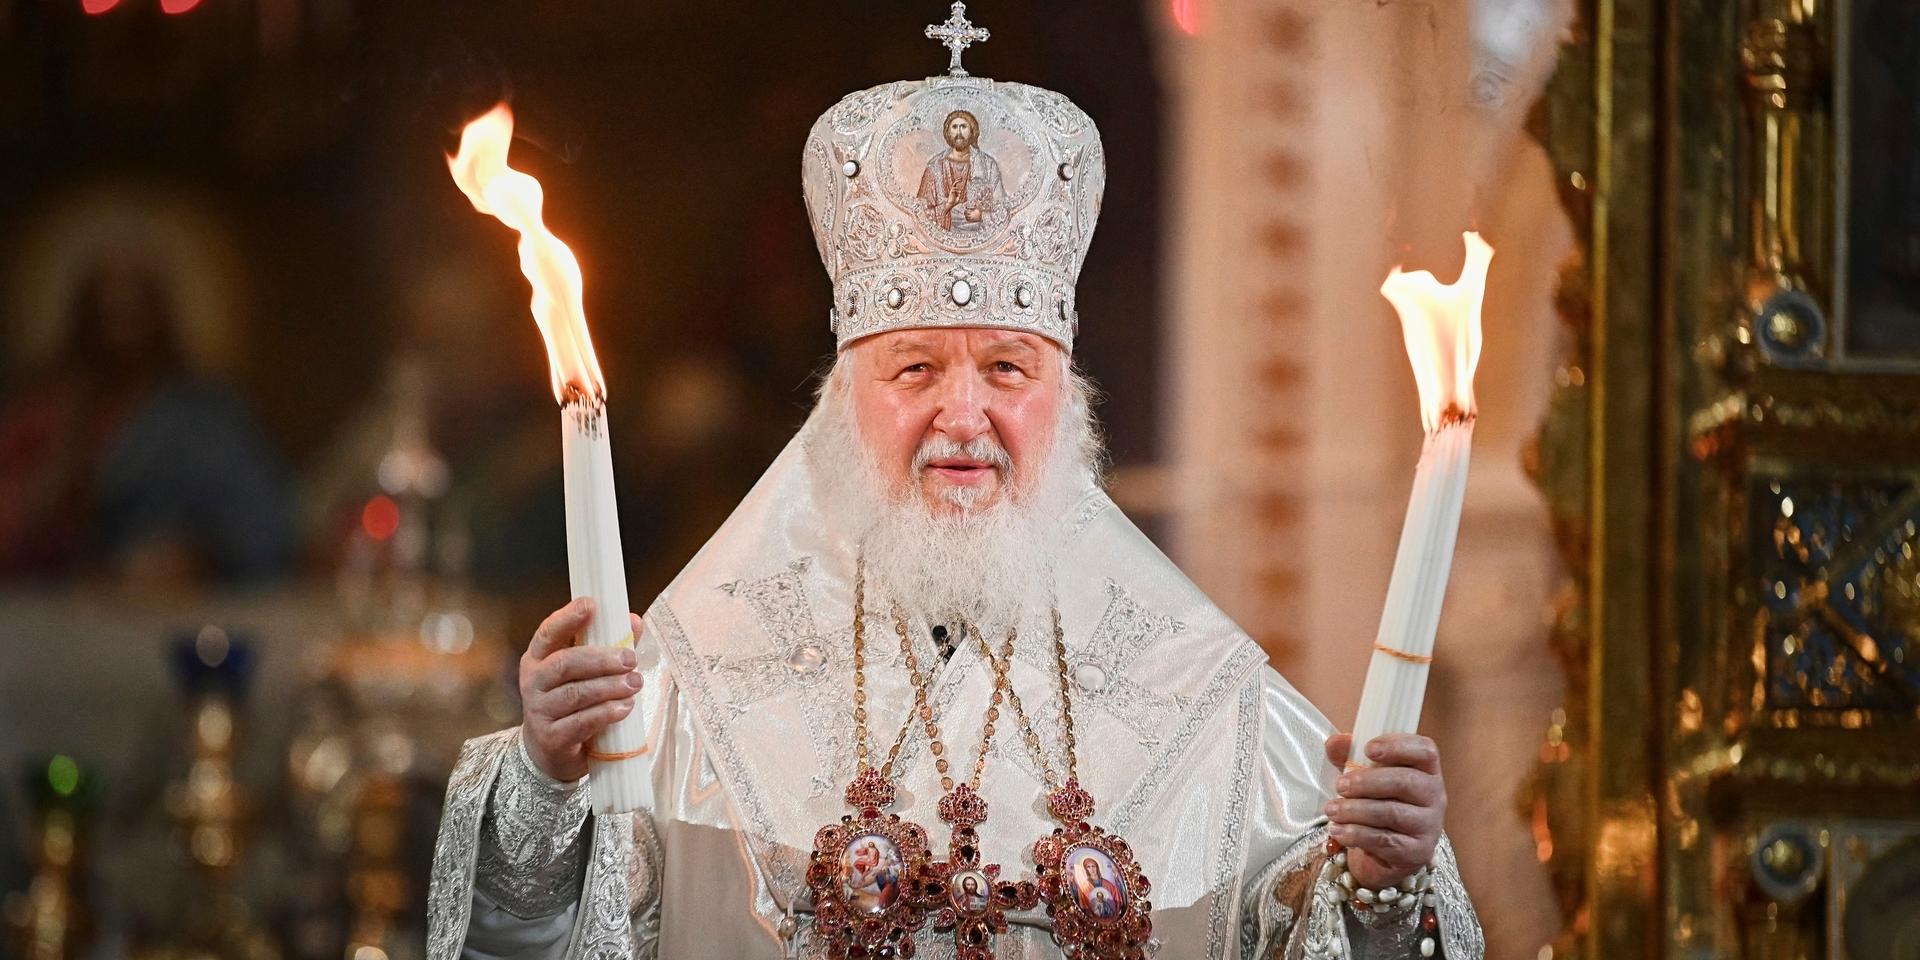 Patriarken Kirill. Bild från i påskas.